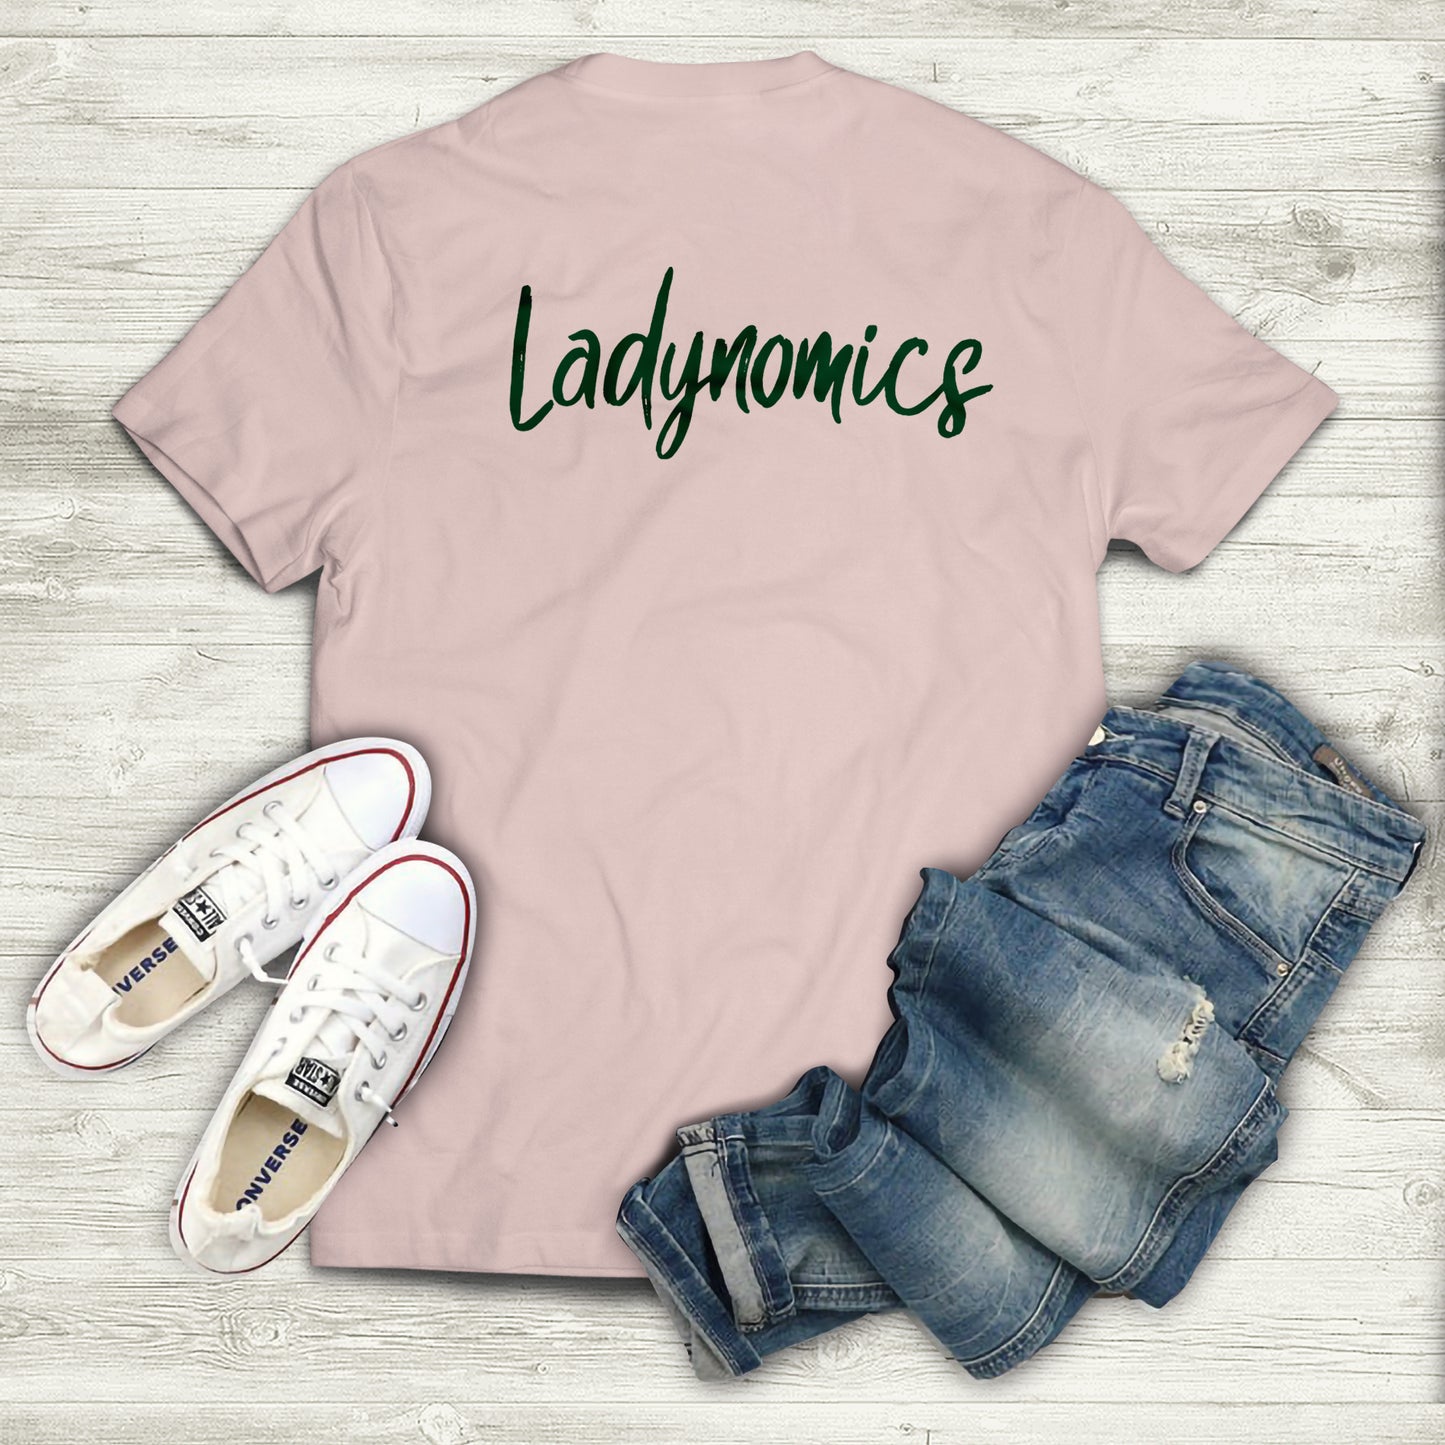 Ladynomics T-Shirt